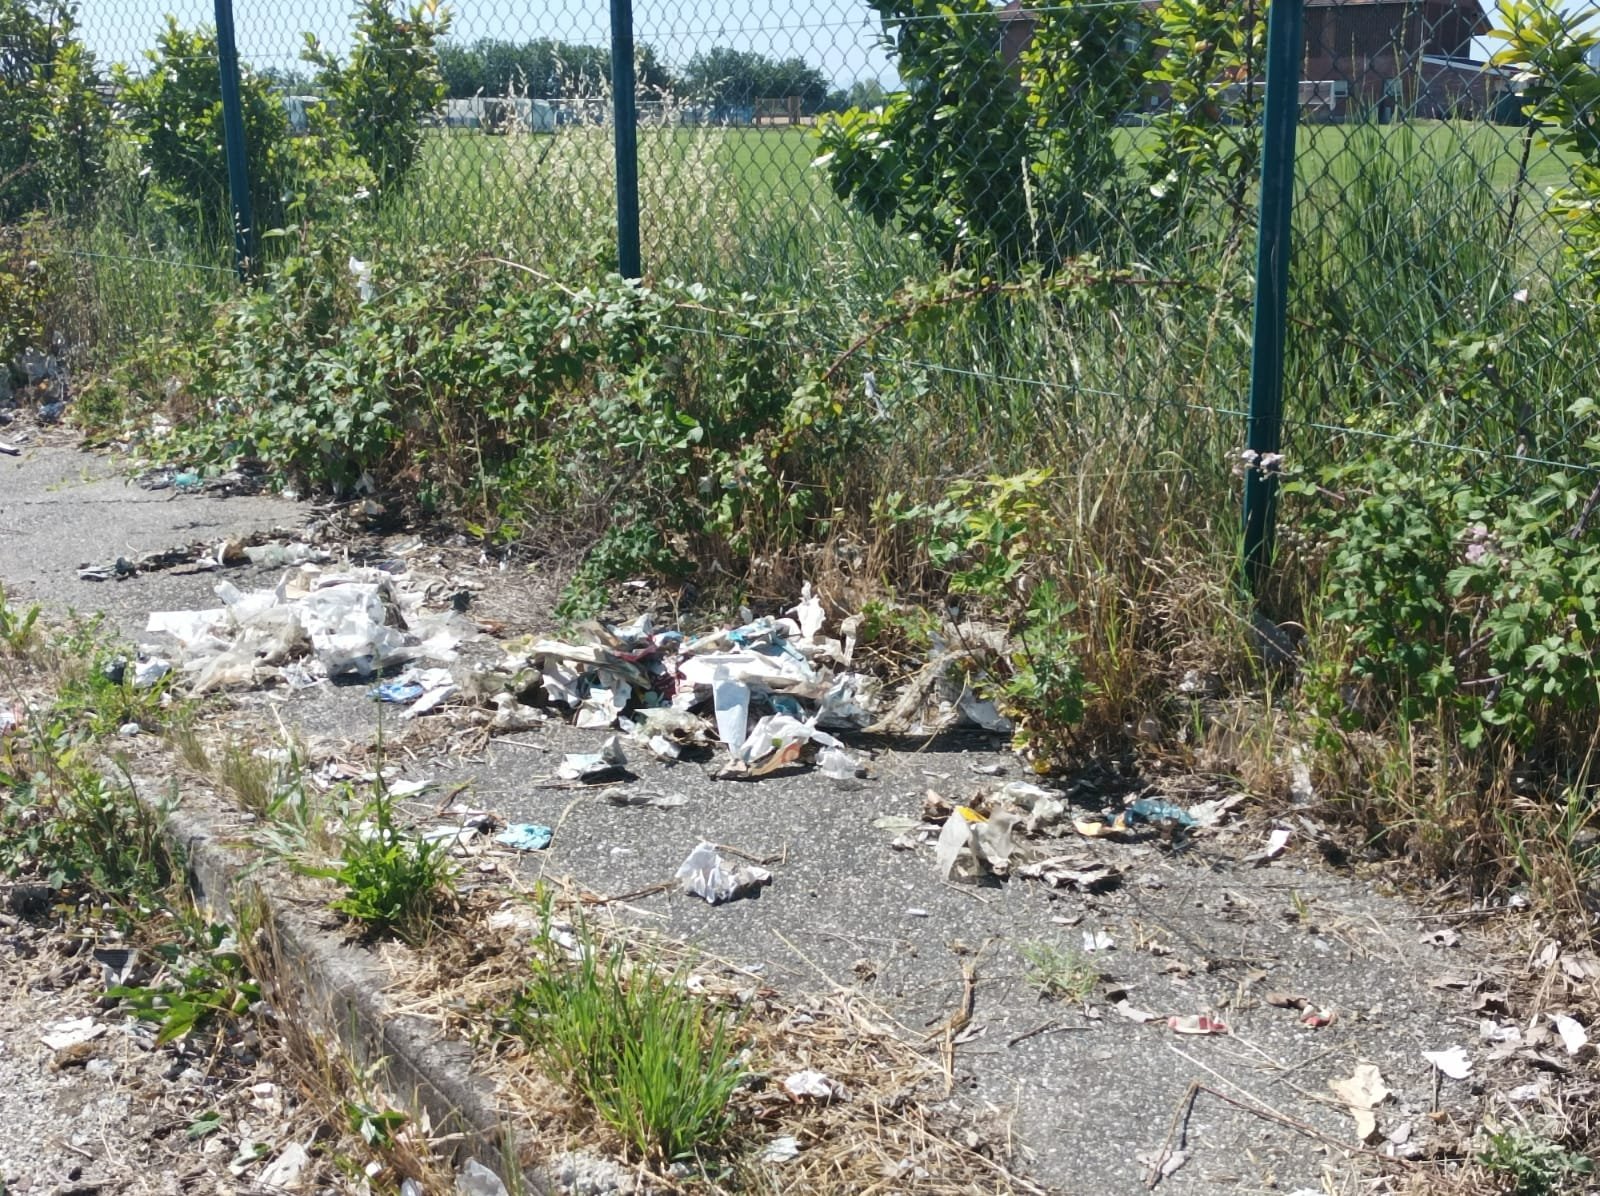 Nuova raccolta rifiuti dei volontari di Plastic Free a Spinetta Marengo, in zona D5